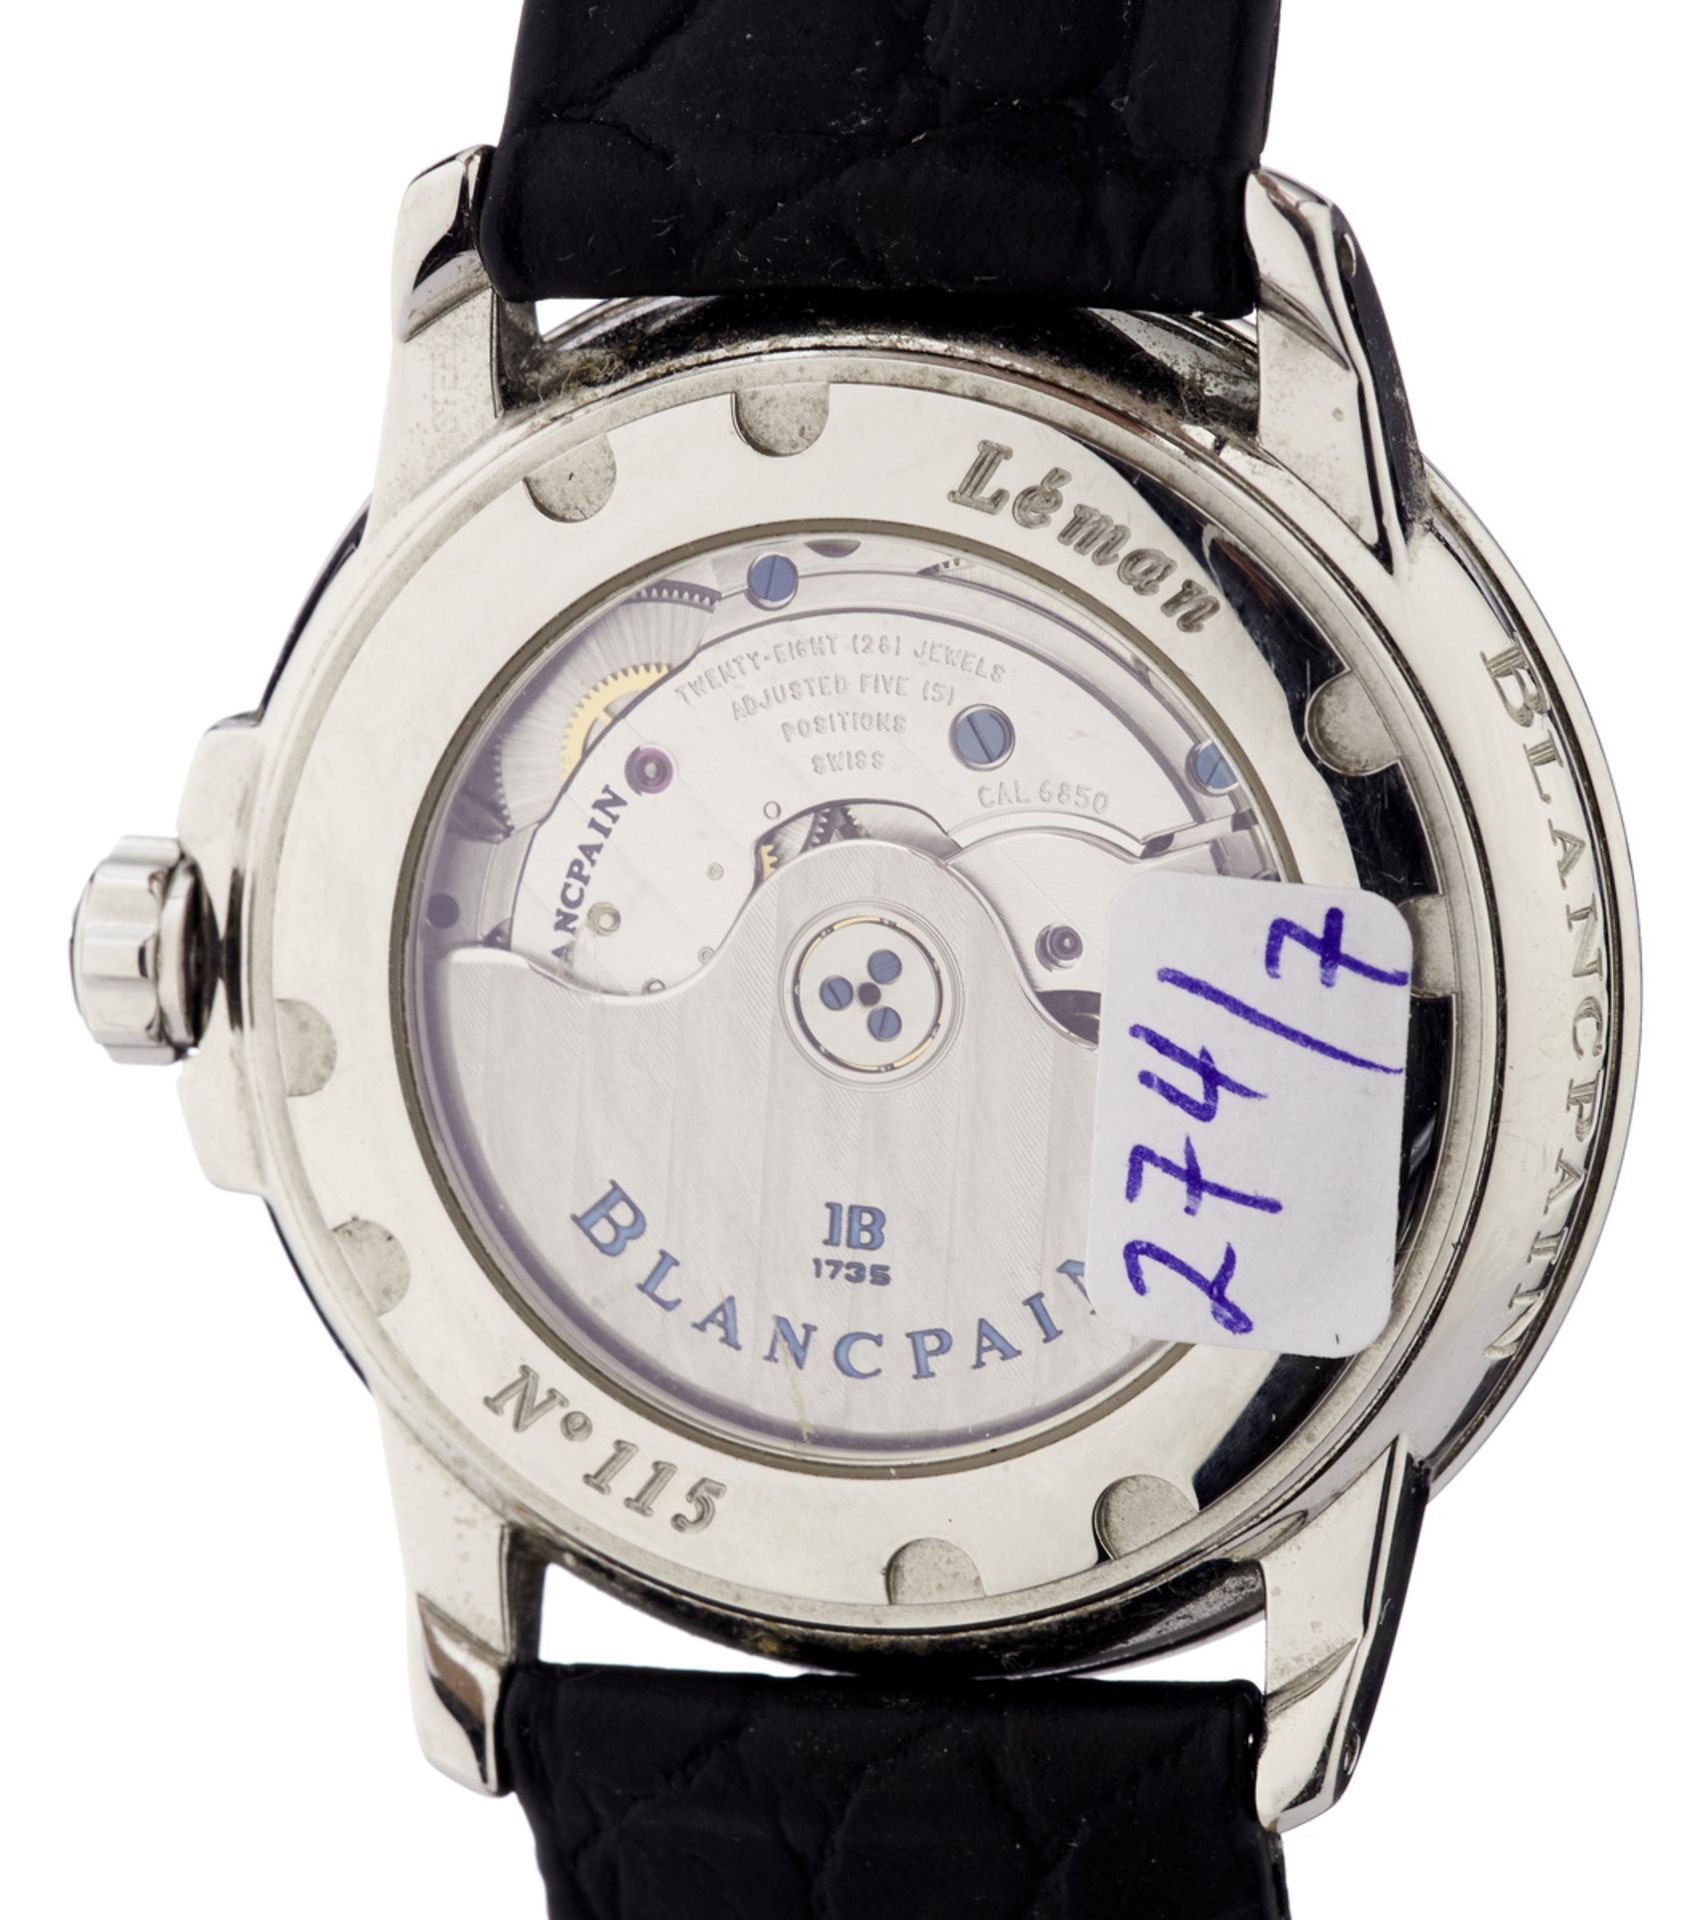 Armbanduhr "Blancpain"Modell "Léman". Signiertes Stahlgehäuse mit verschraubtem Sichtboden. - Bild 2 aus 4